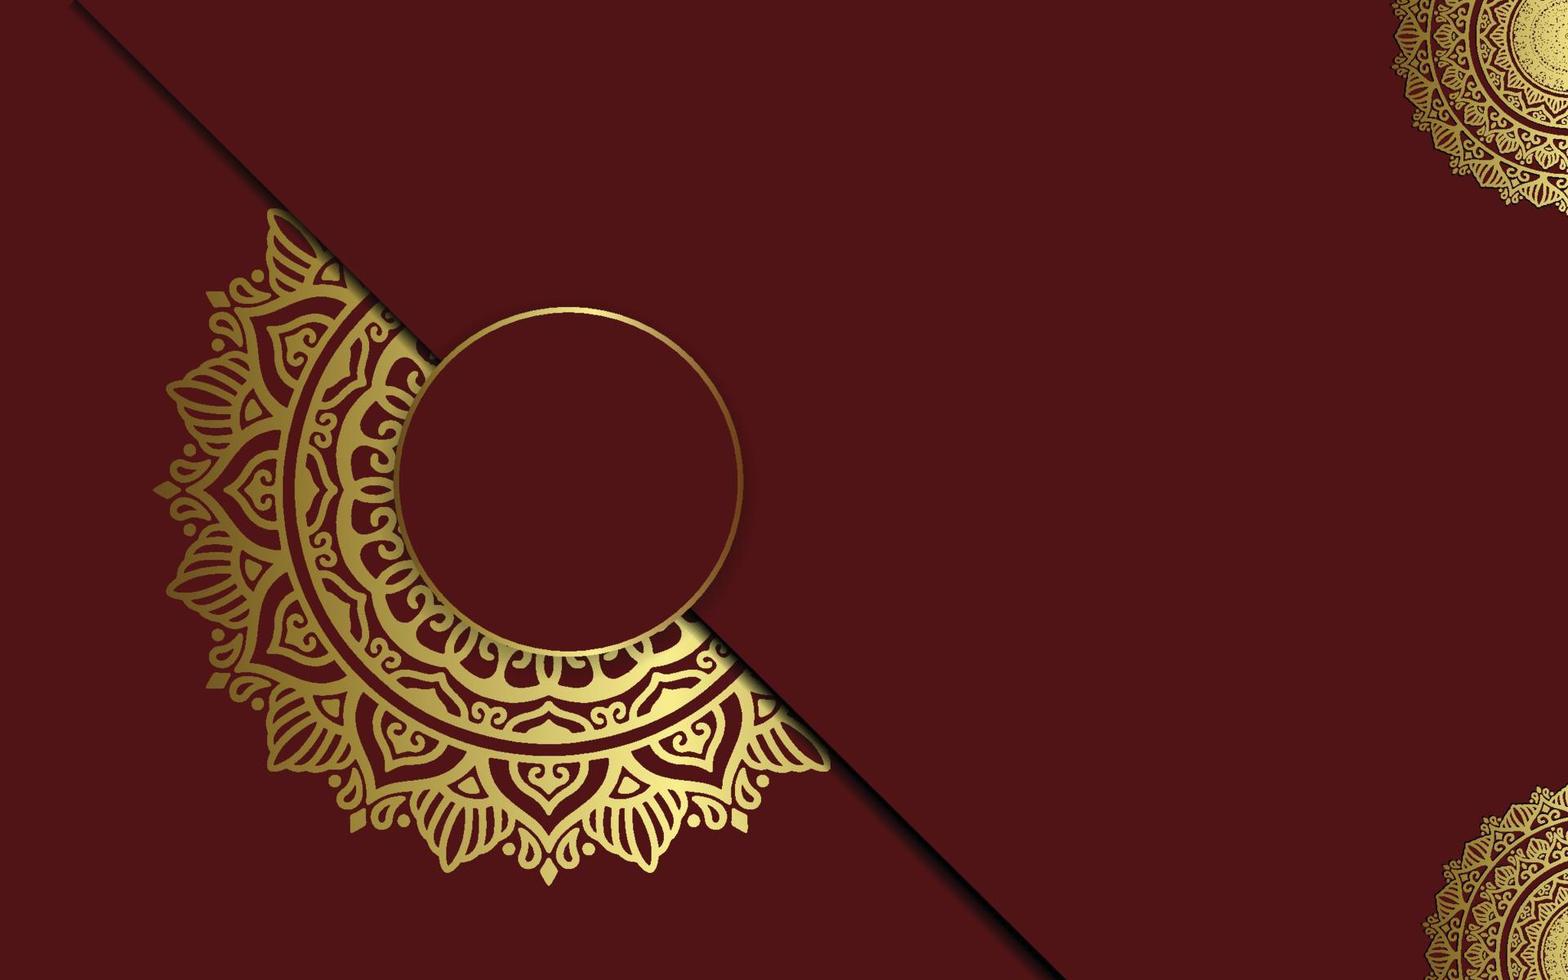 Fondo de mandala ornamental de lujo con estilo de patrón oriental islámico árabe vector premium vecto